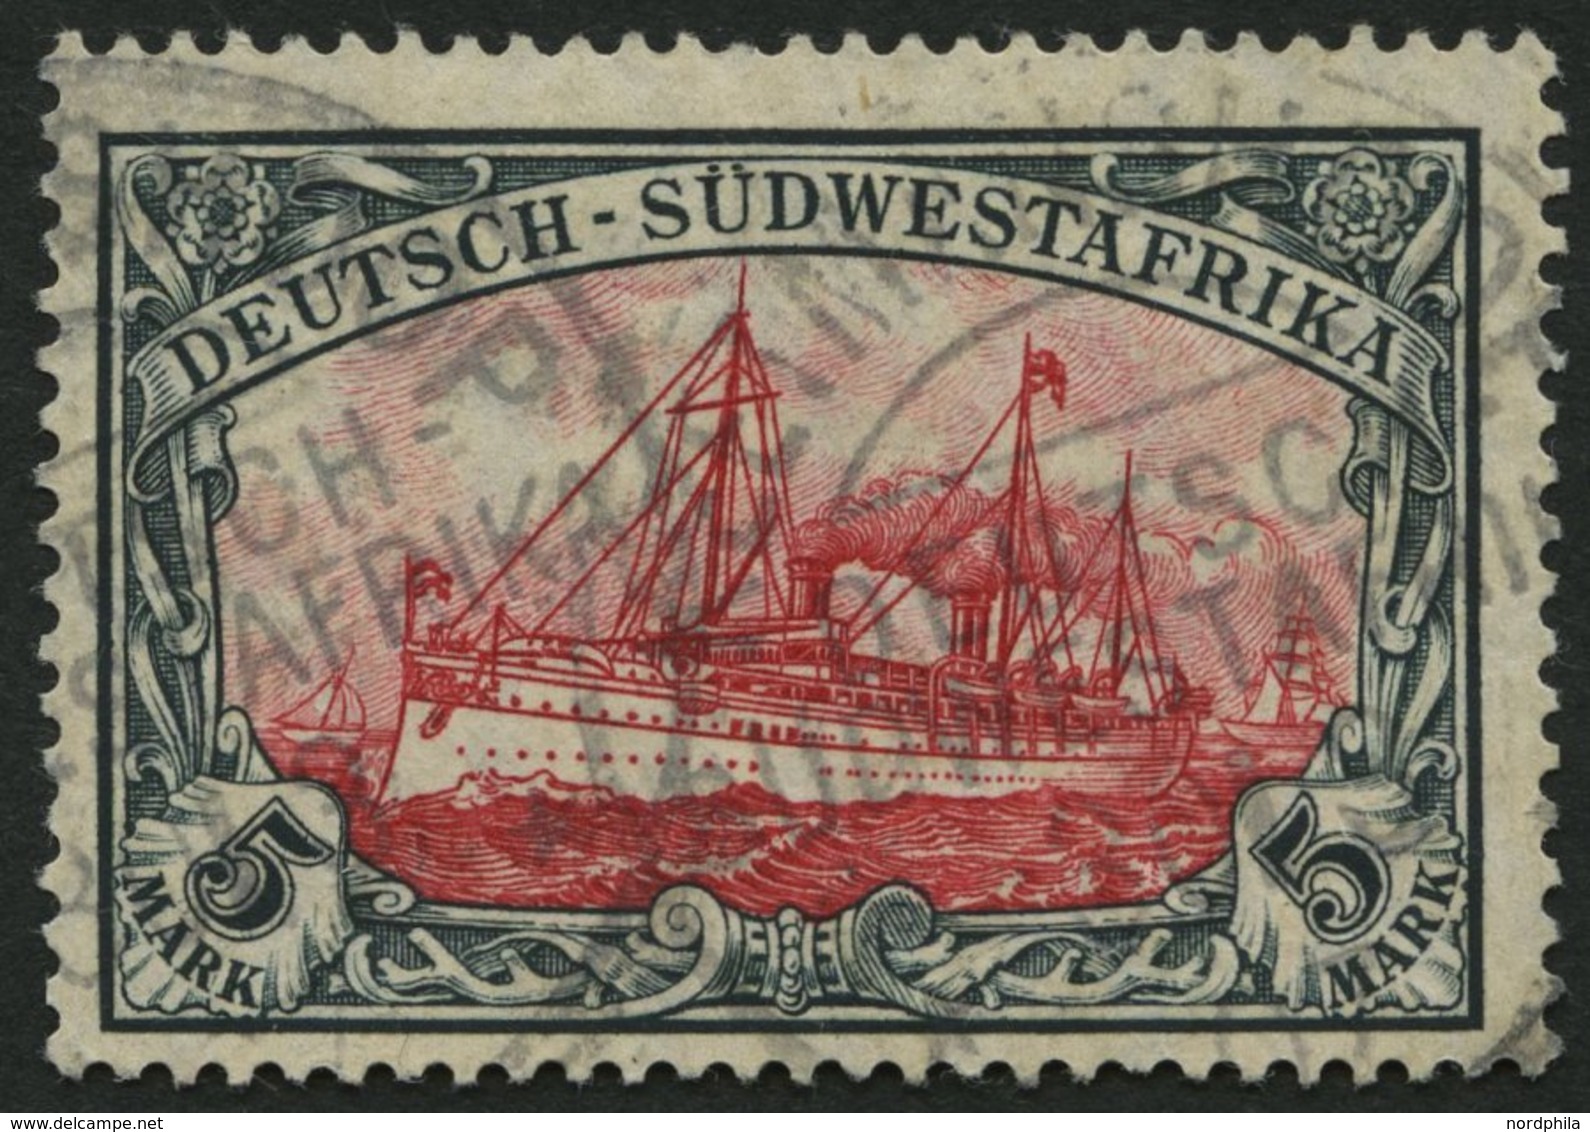 DSWA 32Aa O, 1906, 5 M. Grünschwarz/dunkelkarmin, Mit Wz., Gelblichrot Quarzend, Kleine Randkerbe Sonst Pracht, Gepr. Jä - Deutsch-Südwestafrika